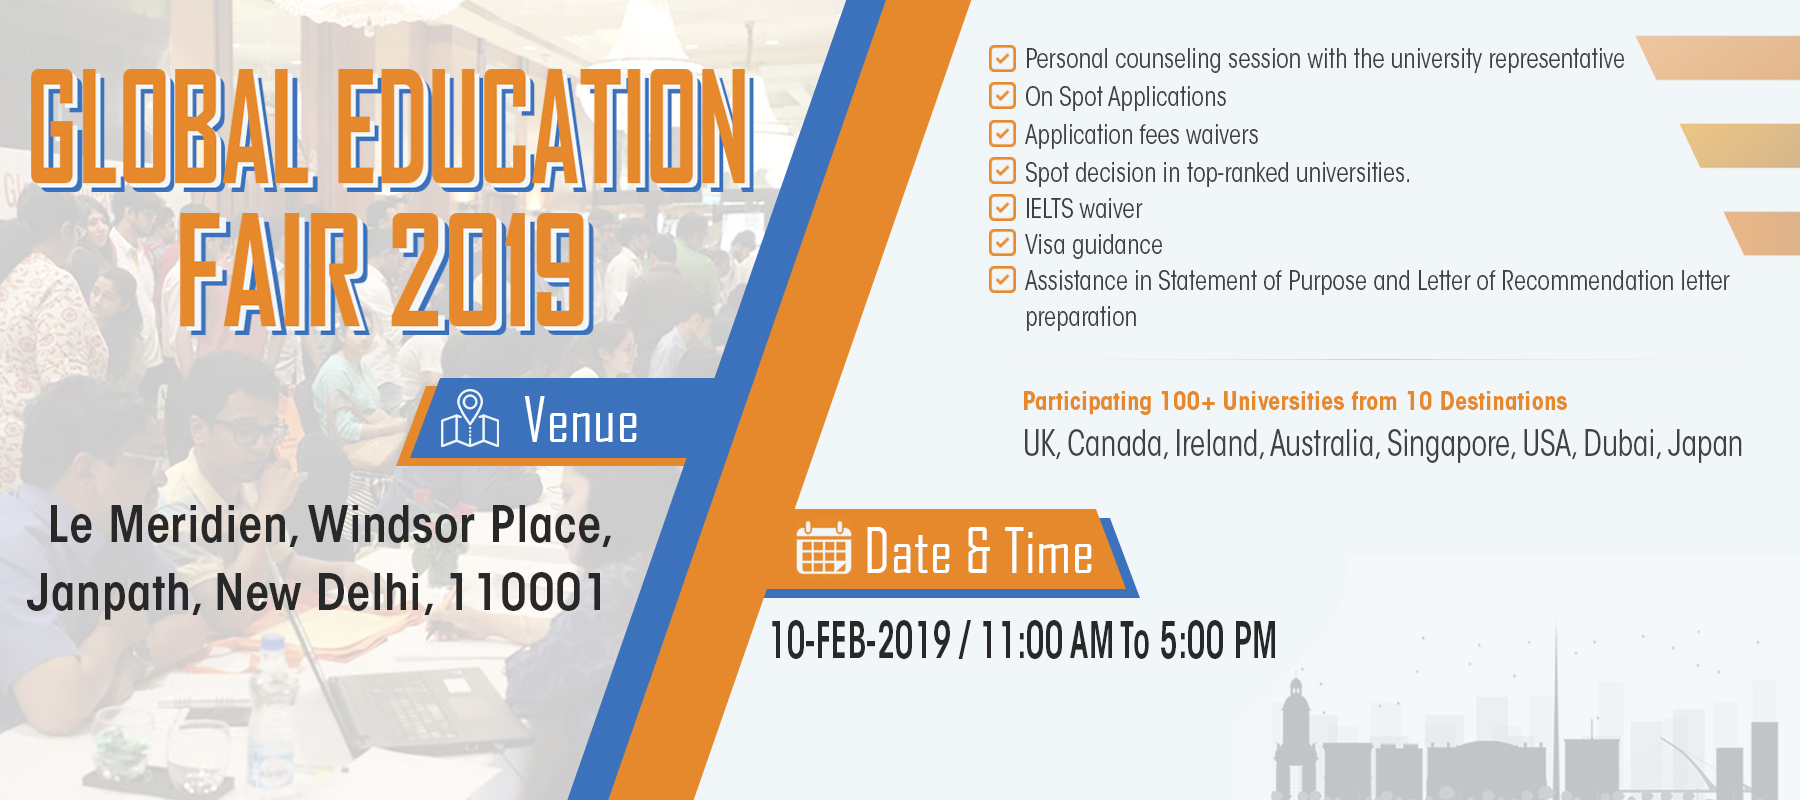 Global Education Fair 2019, New Delhi, Delhi, India